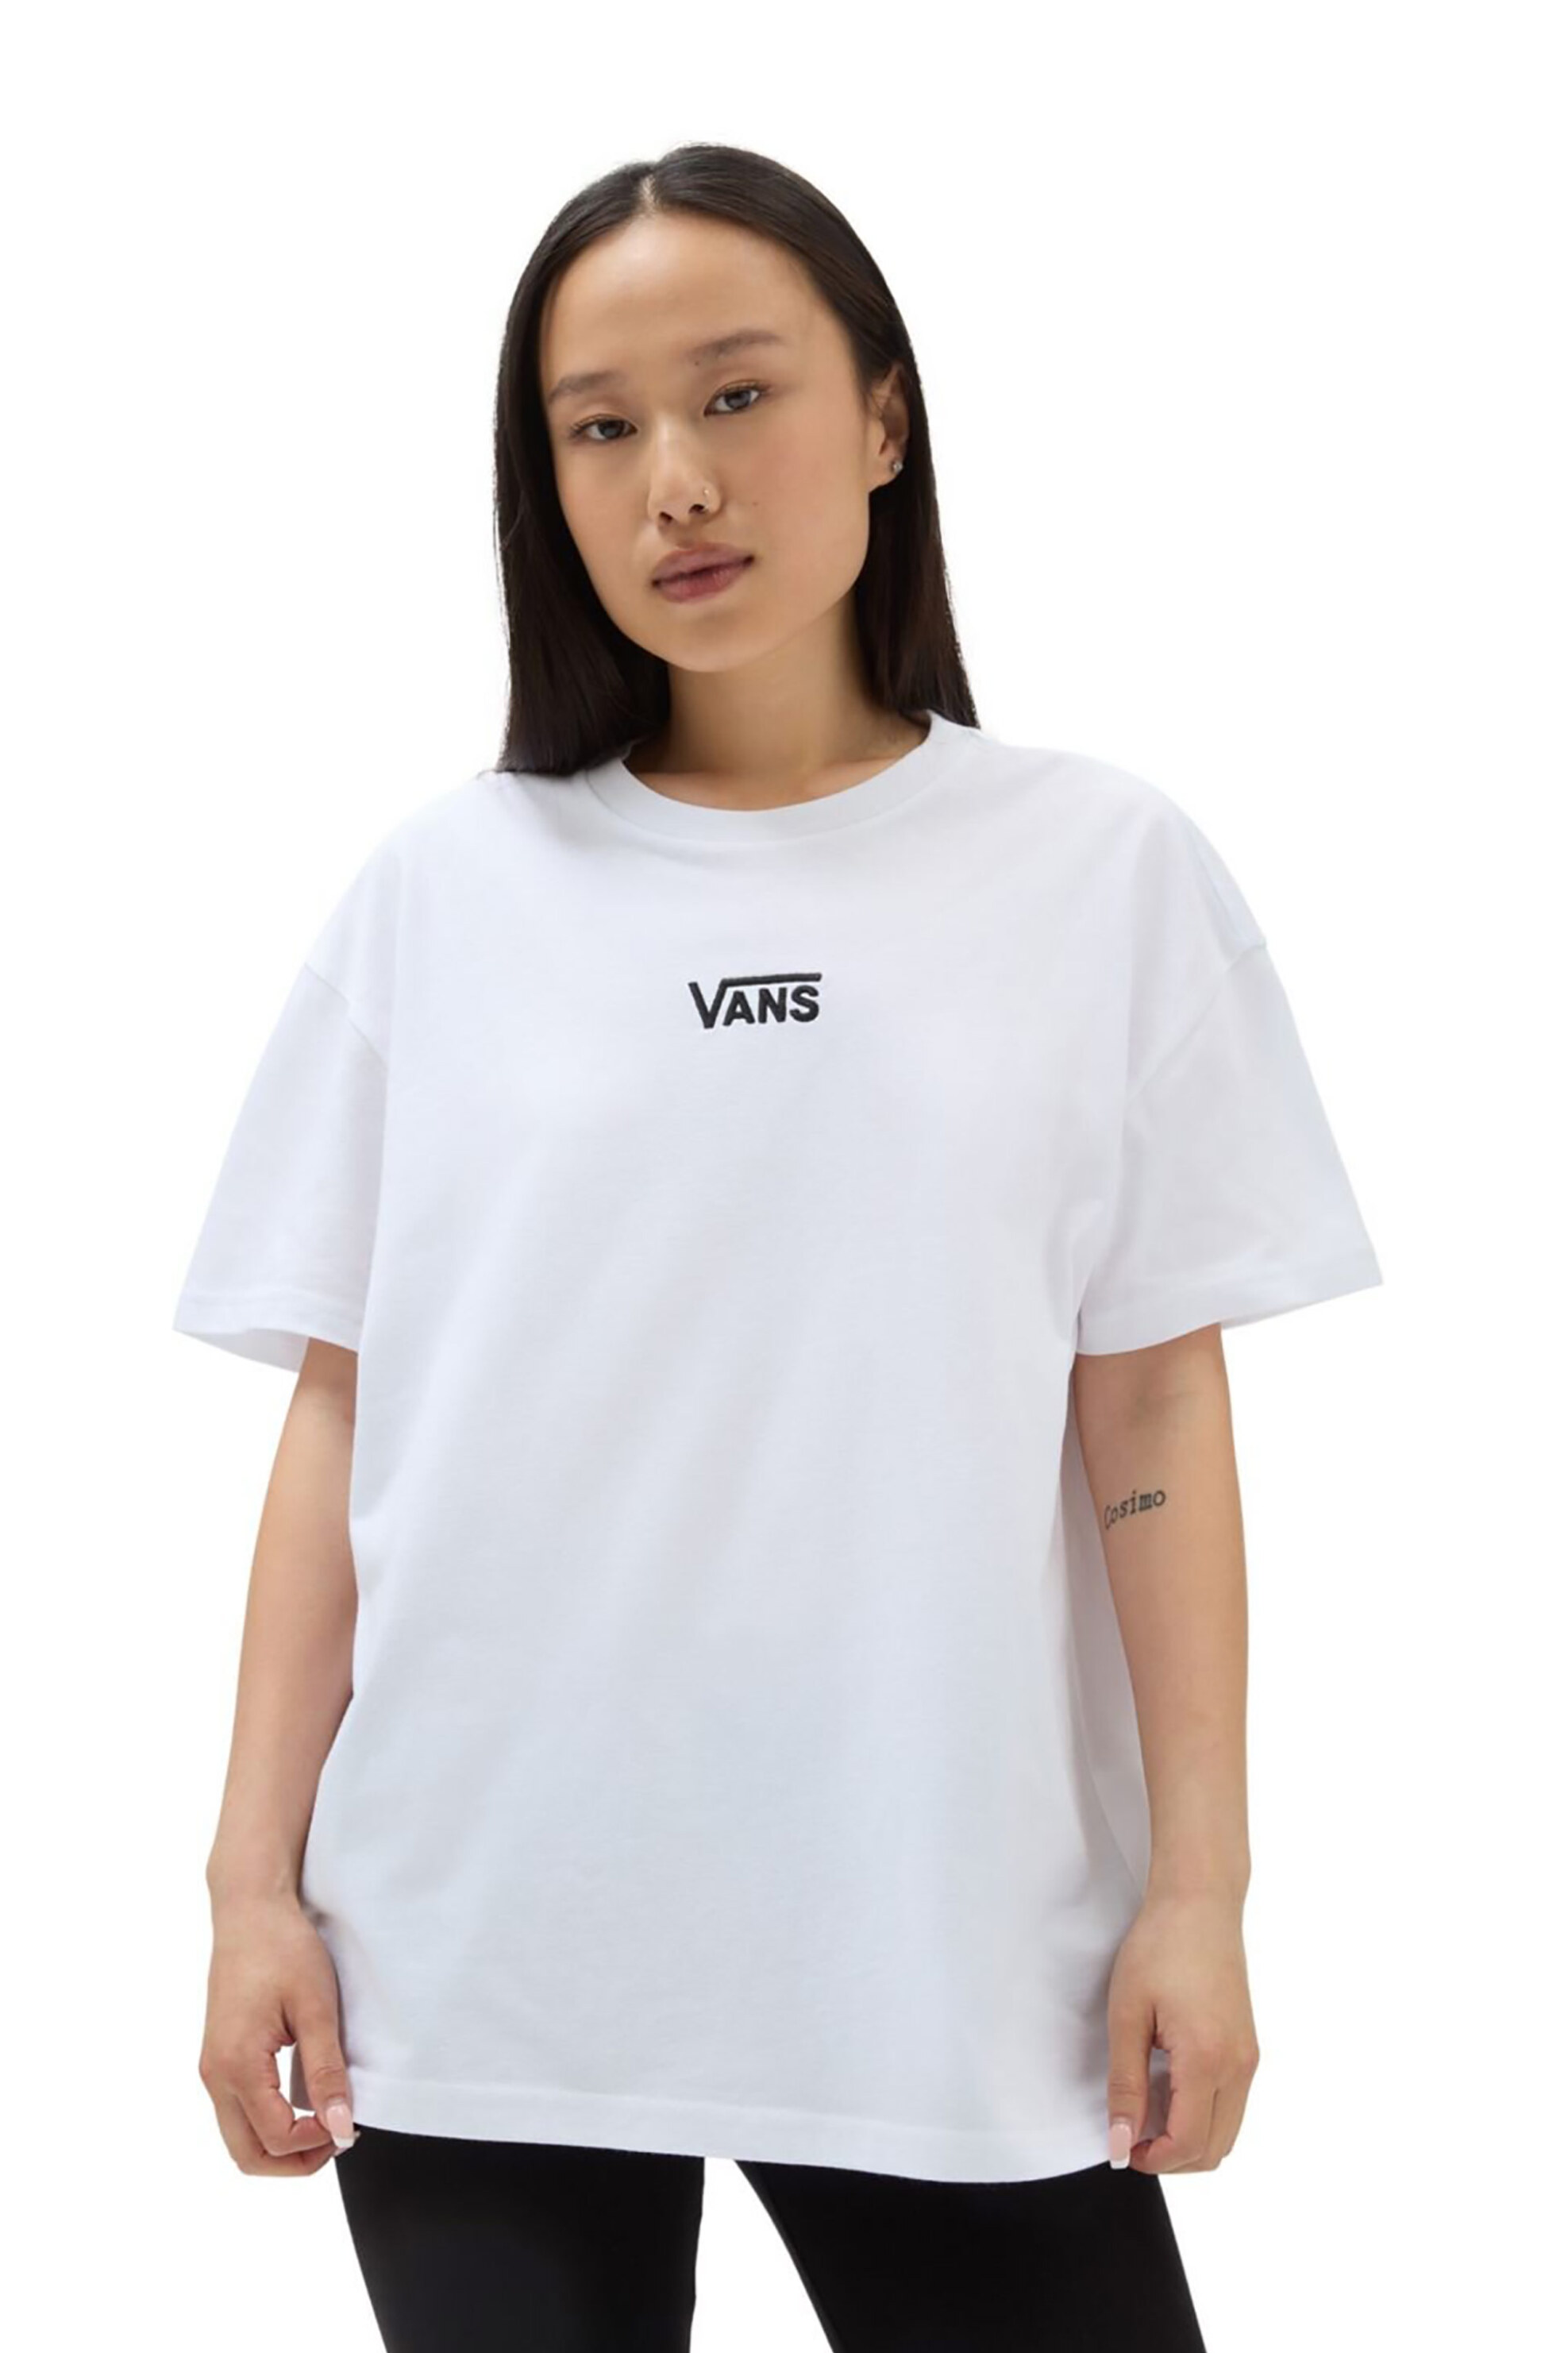 Γυναικεία Ρούχα & Αξεσουάρ > Γυναικεία Ρούχα > Γυναικεία Τοπ > Γυναικεία T-Shirts Vans γυναικείο βαμβακερό T-shirt μονόχρωμο με contrast κεντημένο λογότυπο "Flying V" - VN0A7YUTWHT1 Λευκό